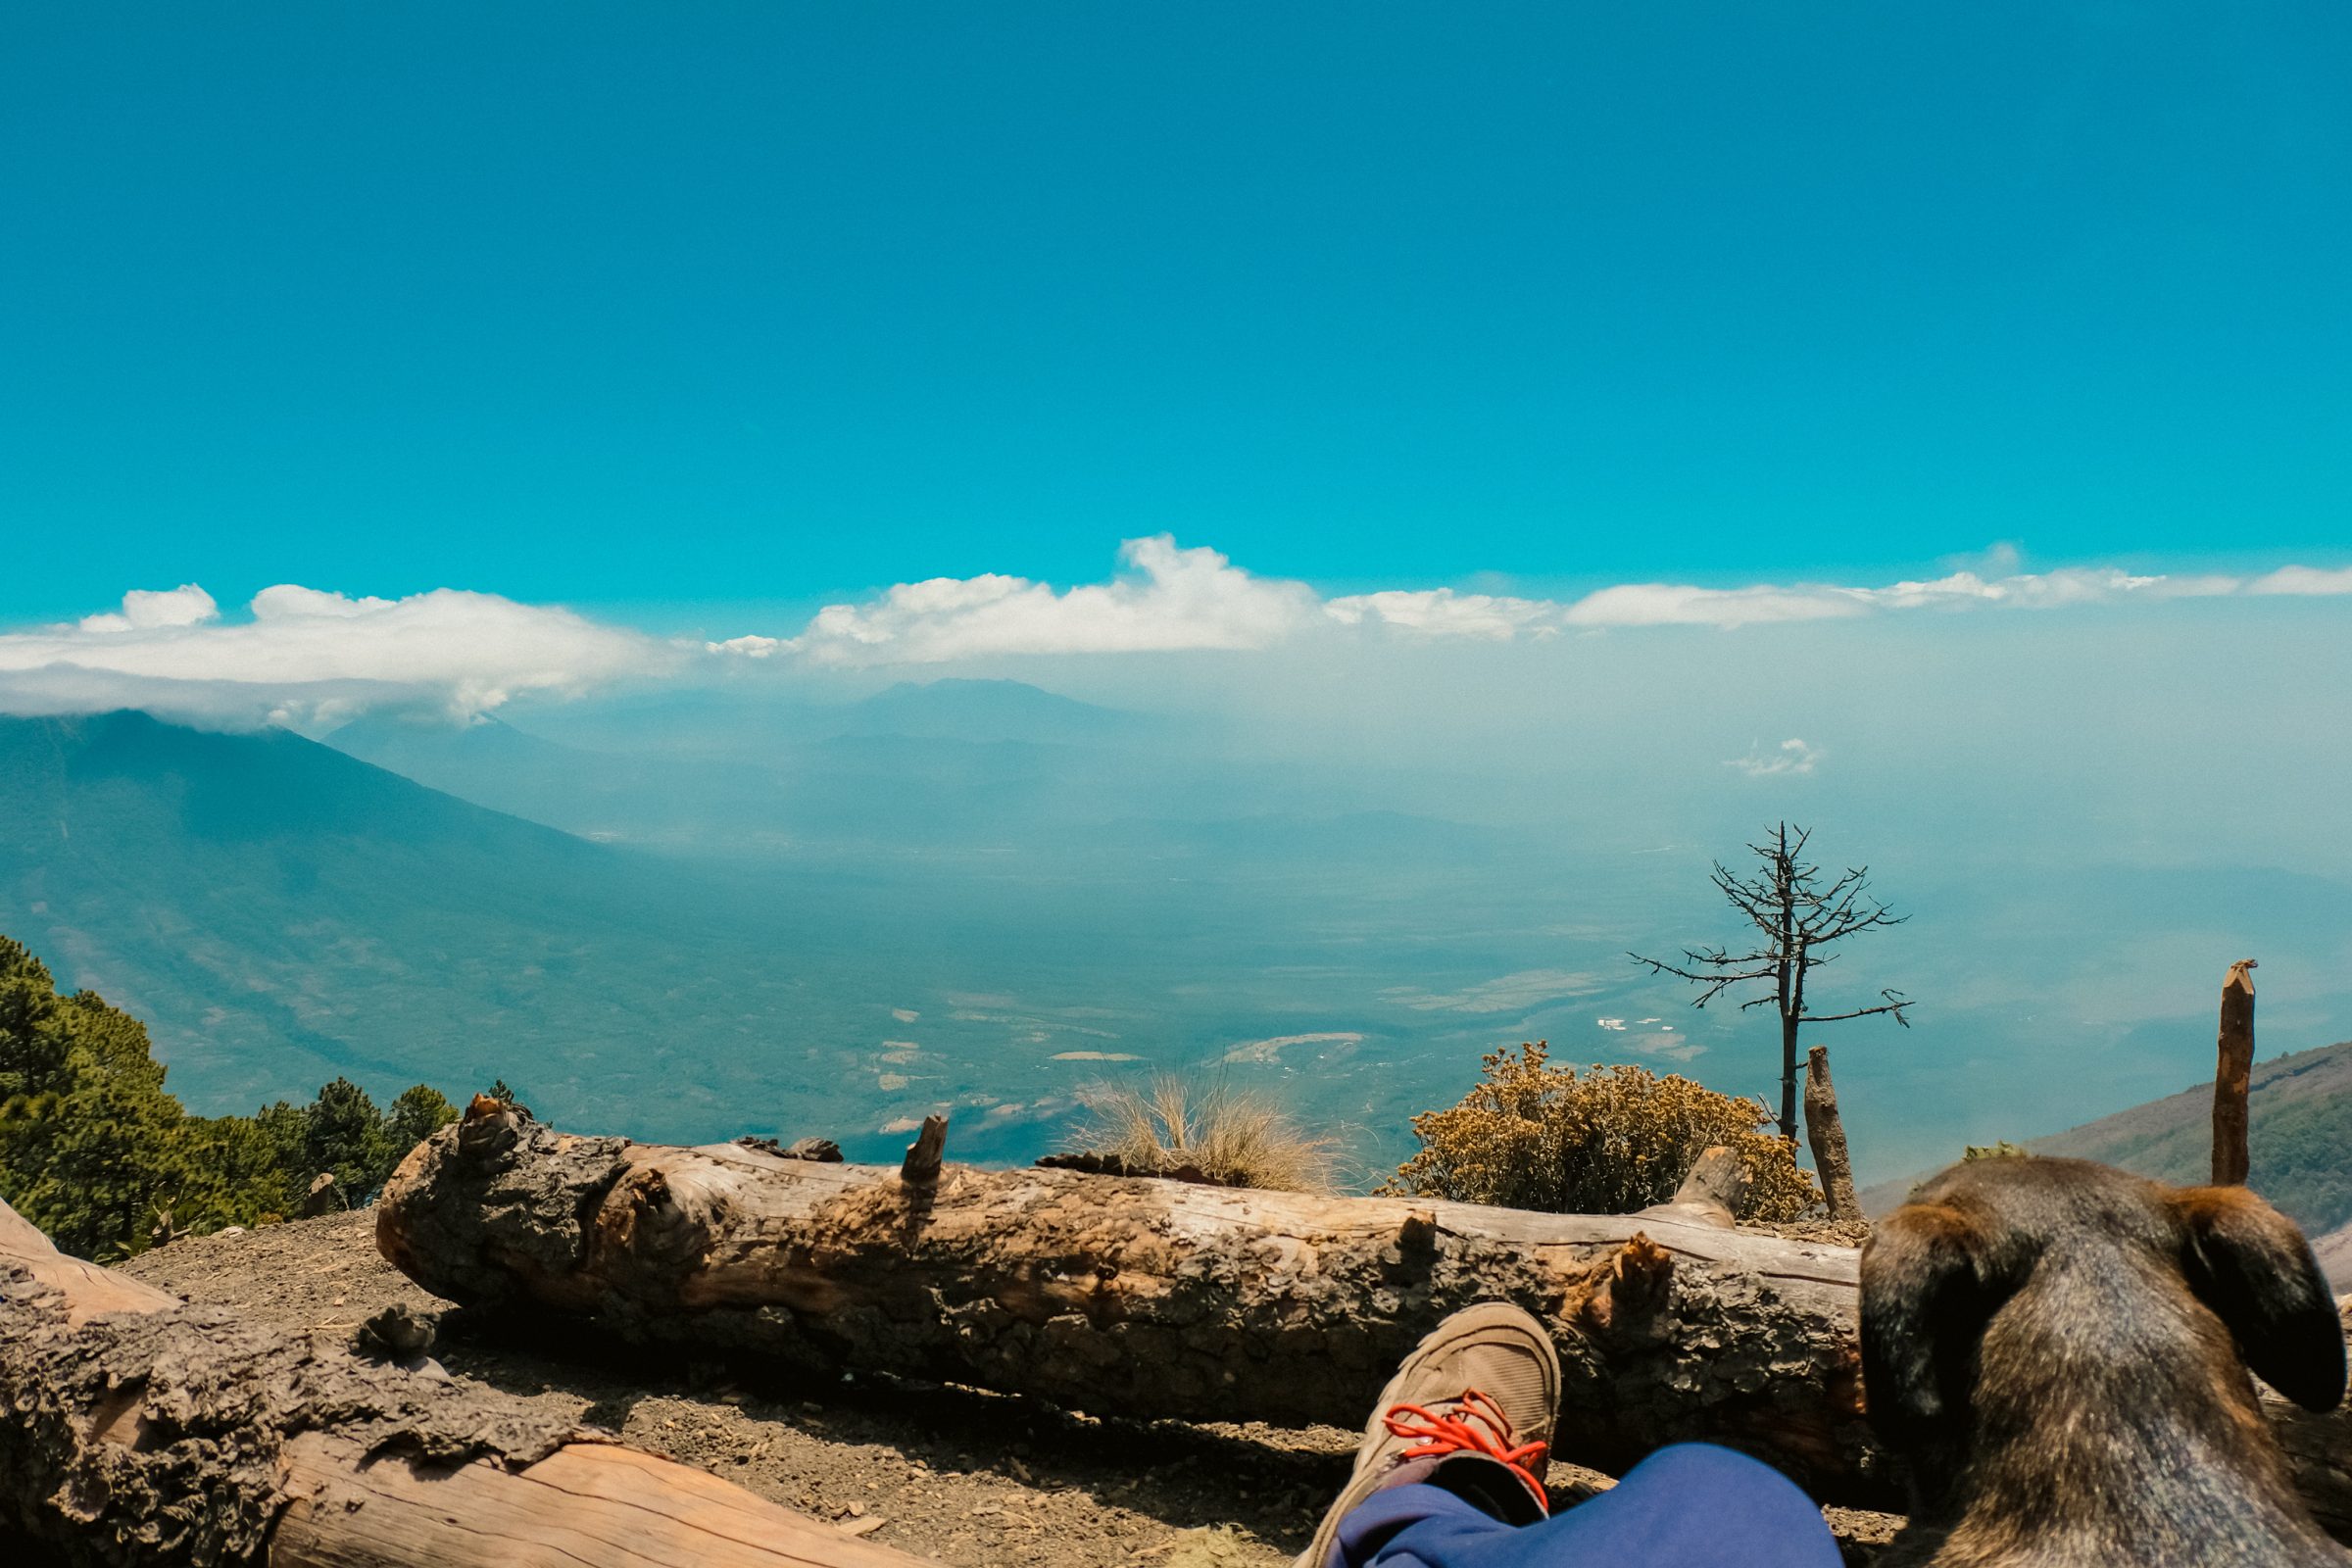 Uitzicht vanaf de Acatenango Vulkaan met een lieve zwerfhond die me de hele dag heeft gevolgd